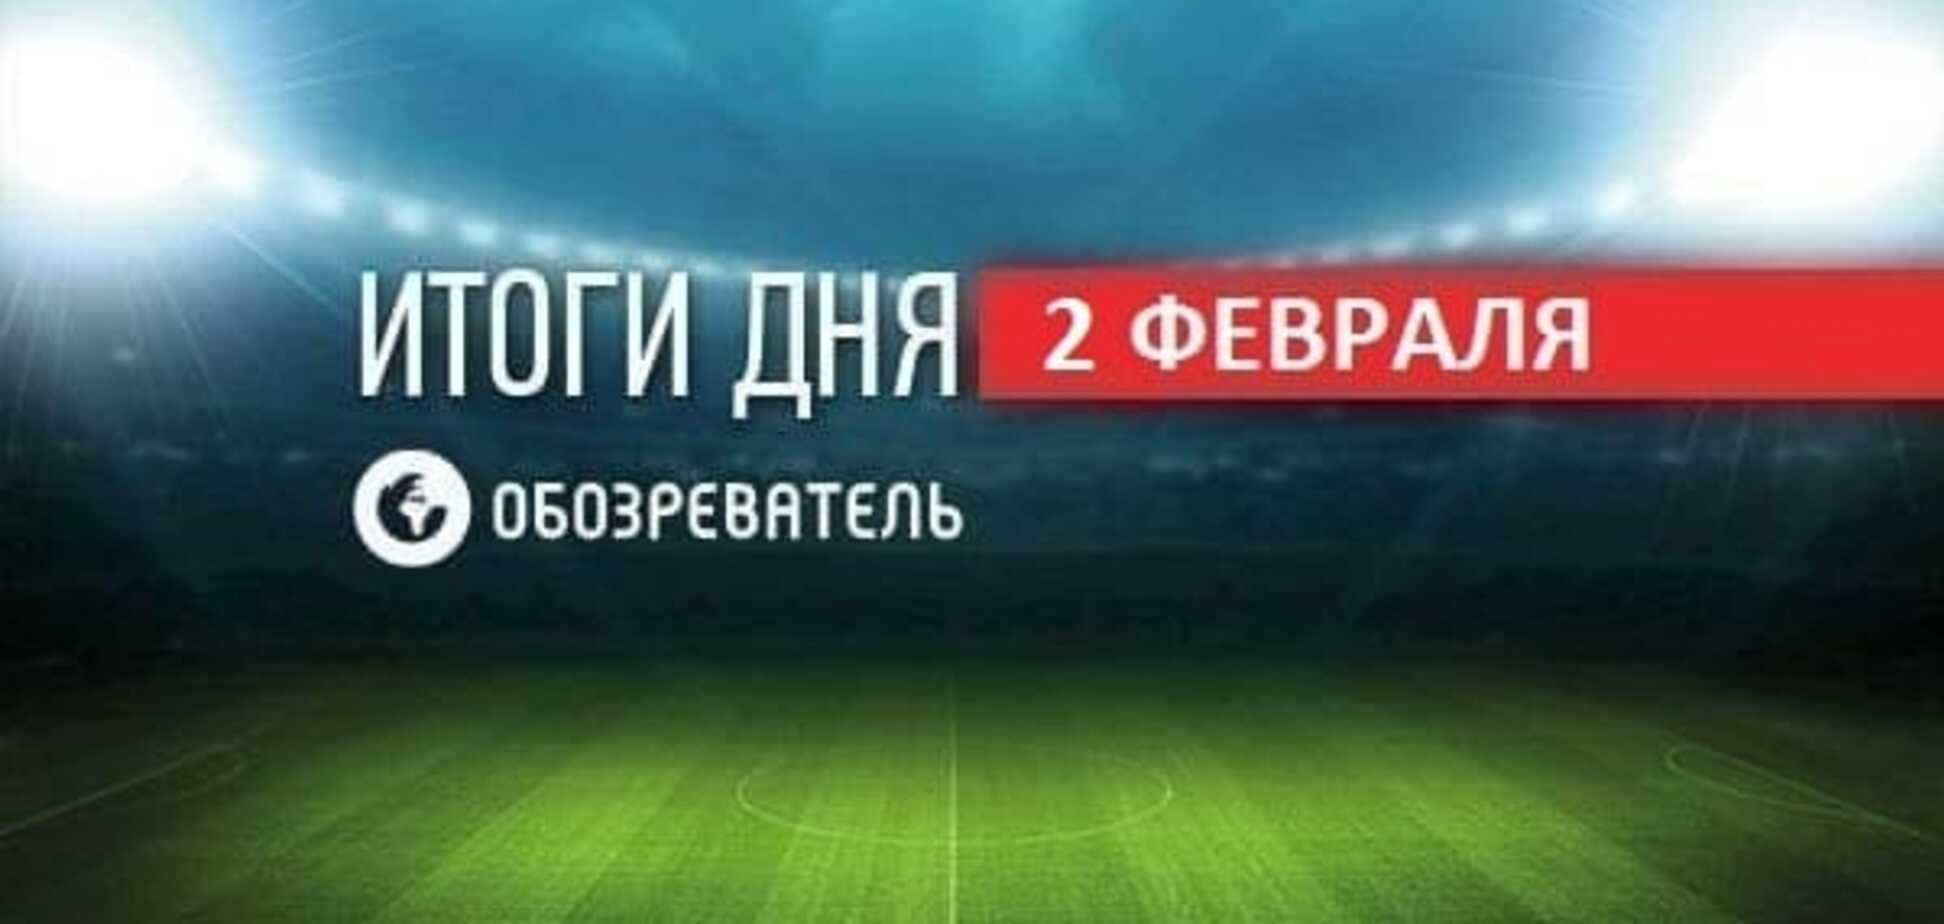 Ребров высмеял трансфер Ярмоленко, УЕФА обрадовал 'Динамо'. Спортивные итоги 2 февраля